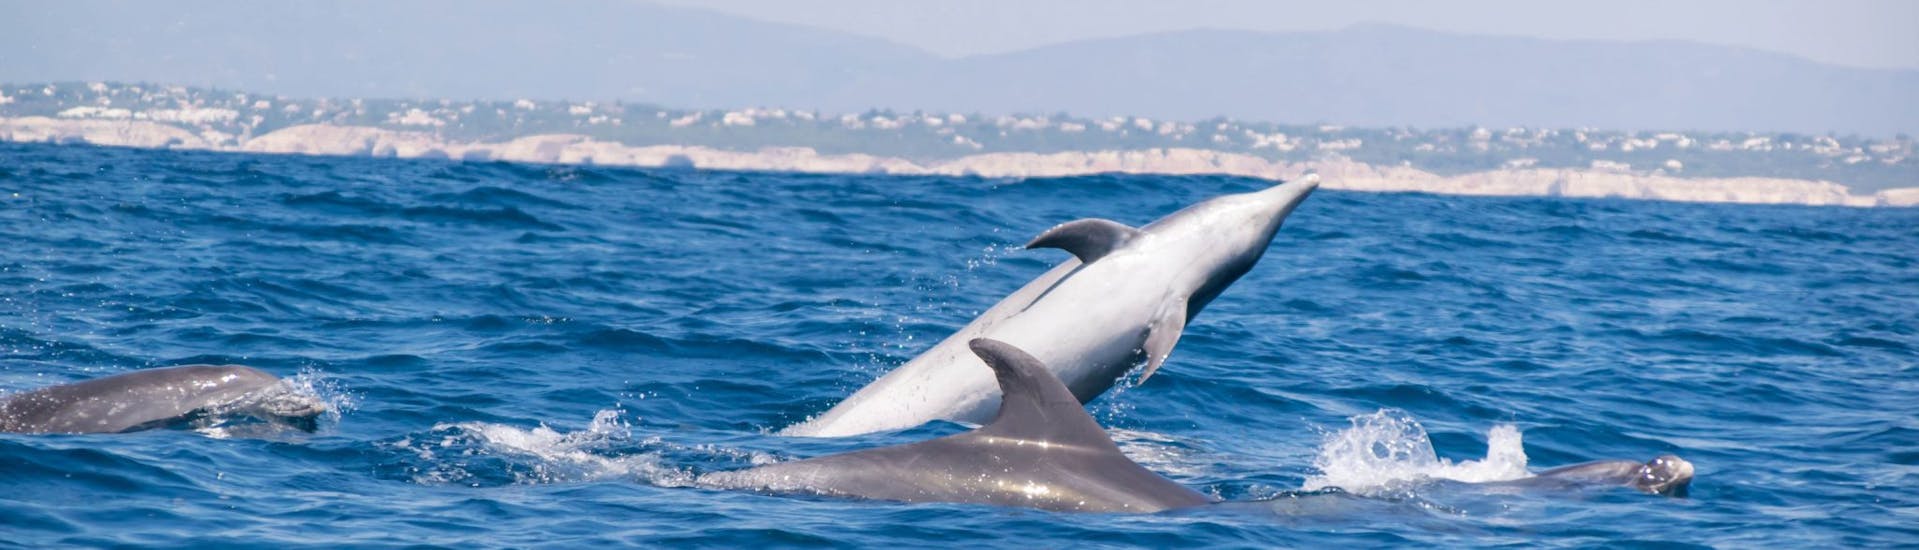 Dolfijnen die te zien zijn tijdens de boottocht vanuit Portimão met dolfijnen kijken met 5emotions Portimão.